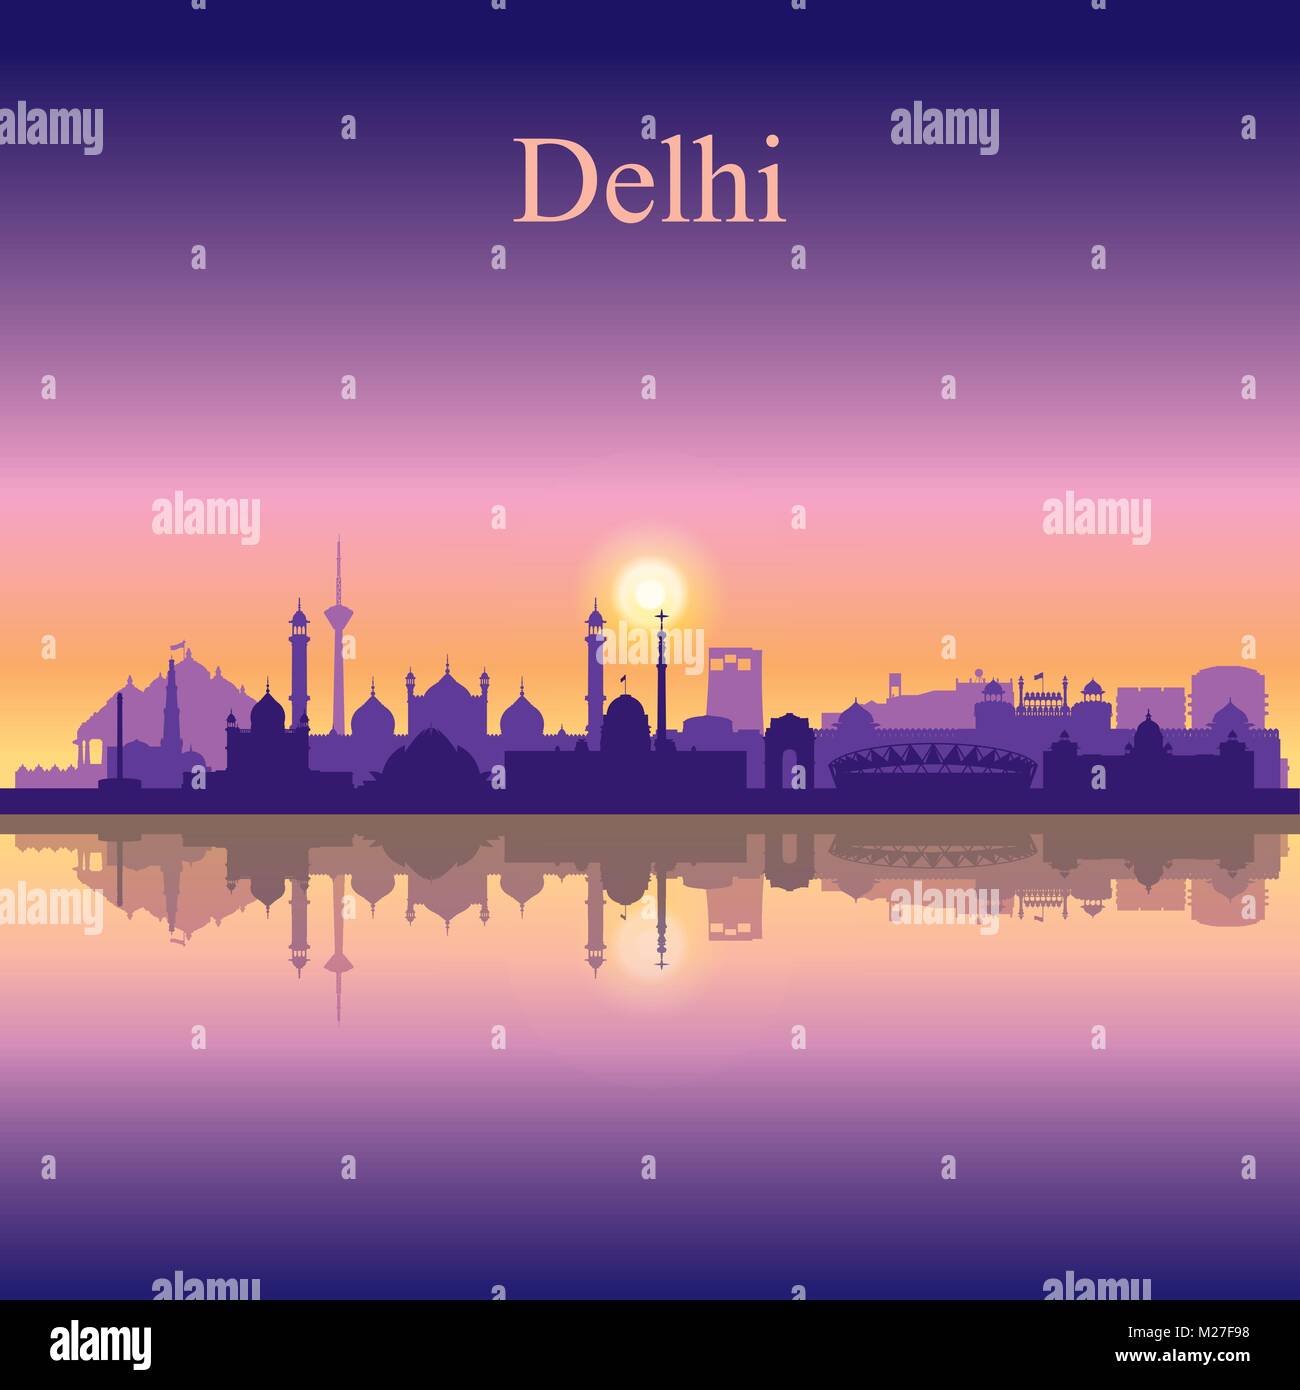 Delhi city skyline silhouette background, vector illustration Stock Vector